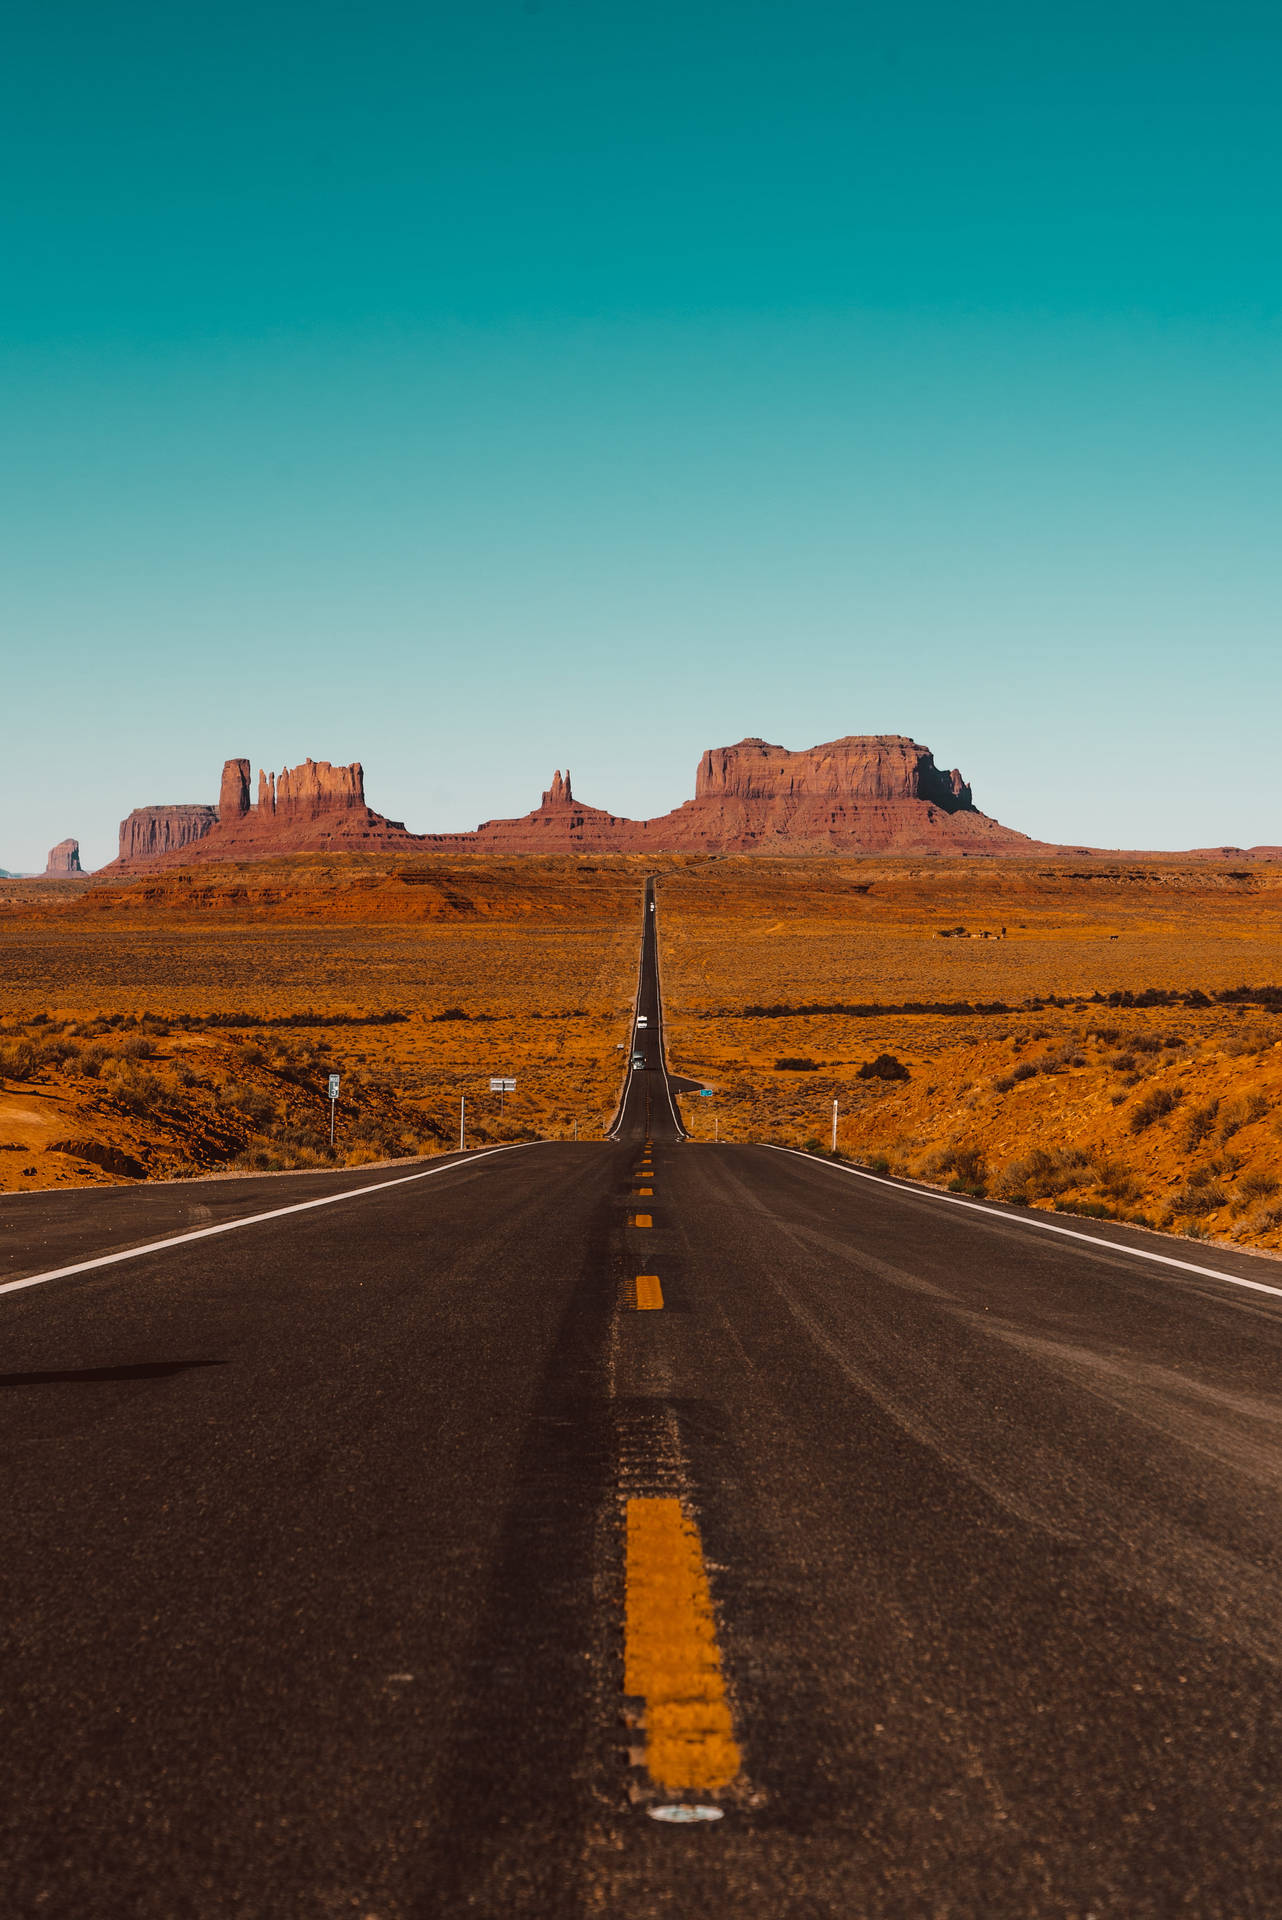 Iphonelandskapsbakgrundsväg Till Monument Valley. Wallpaper